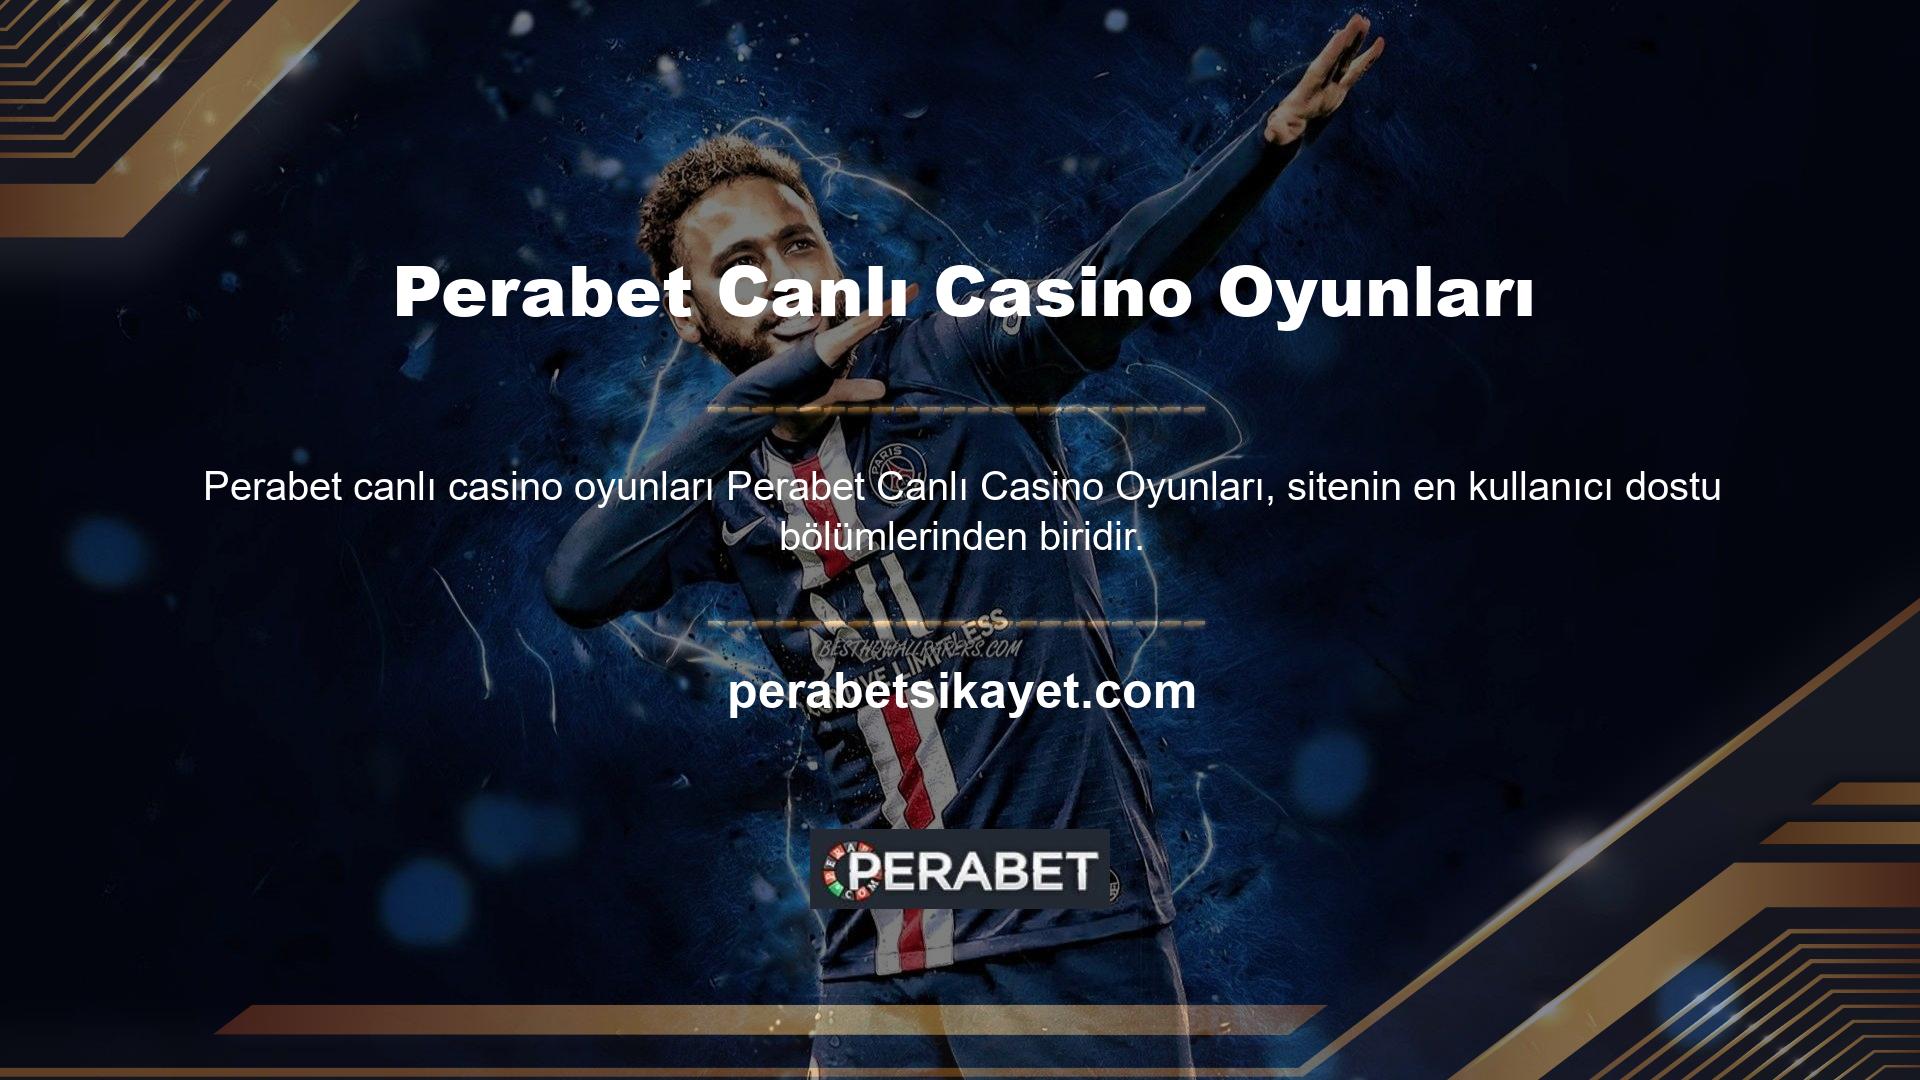 Casino web siteleri, kullanıcıların para kazanmasını sağlayan hızlı ve eğlenceli çevrimiçi hizmetler sunar